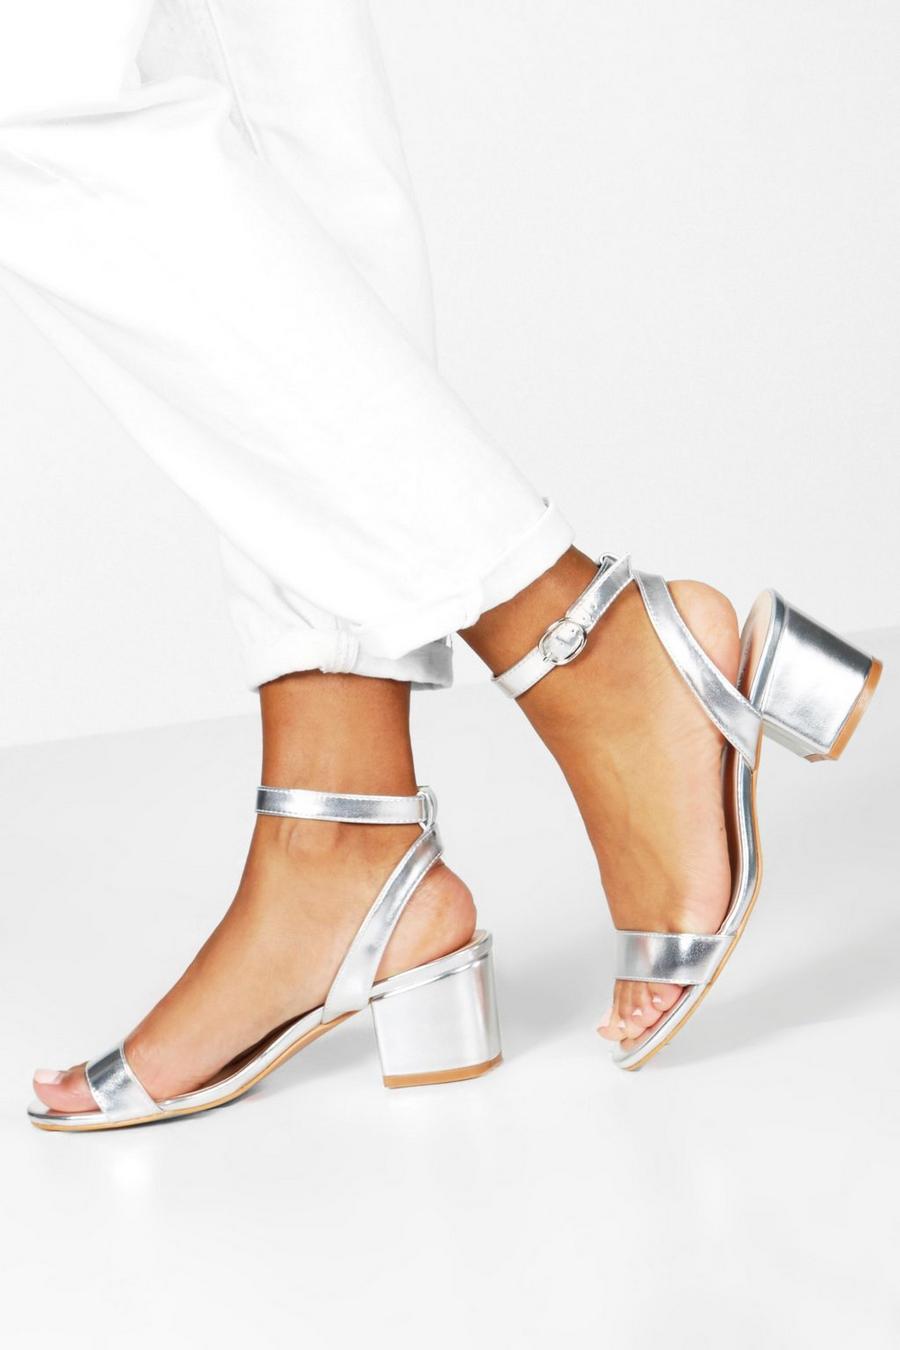 Sandales effet métallisé à talon carré et brides, Argent